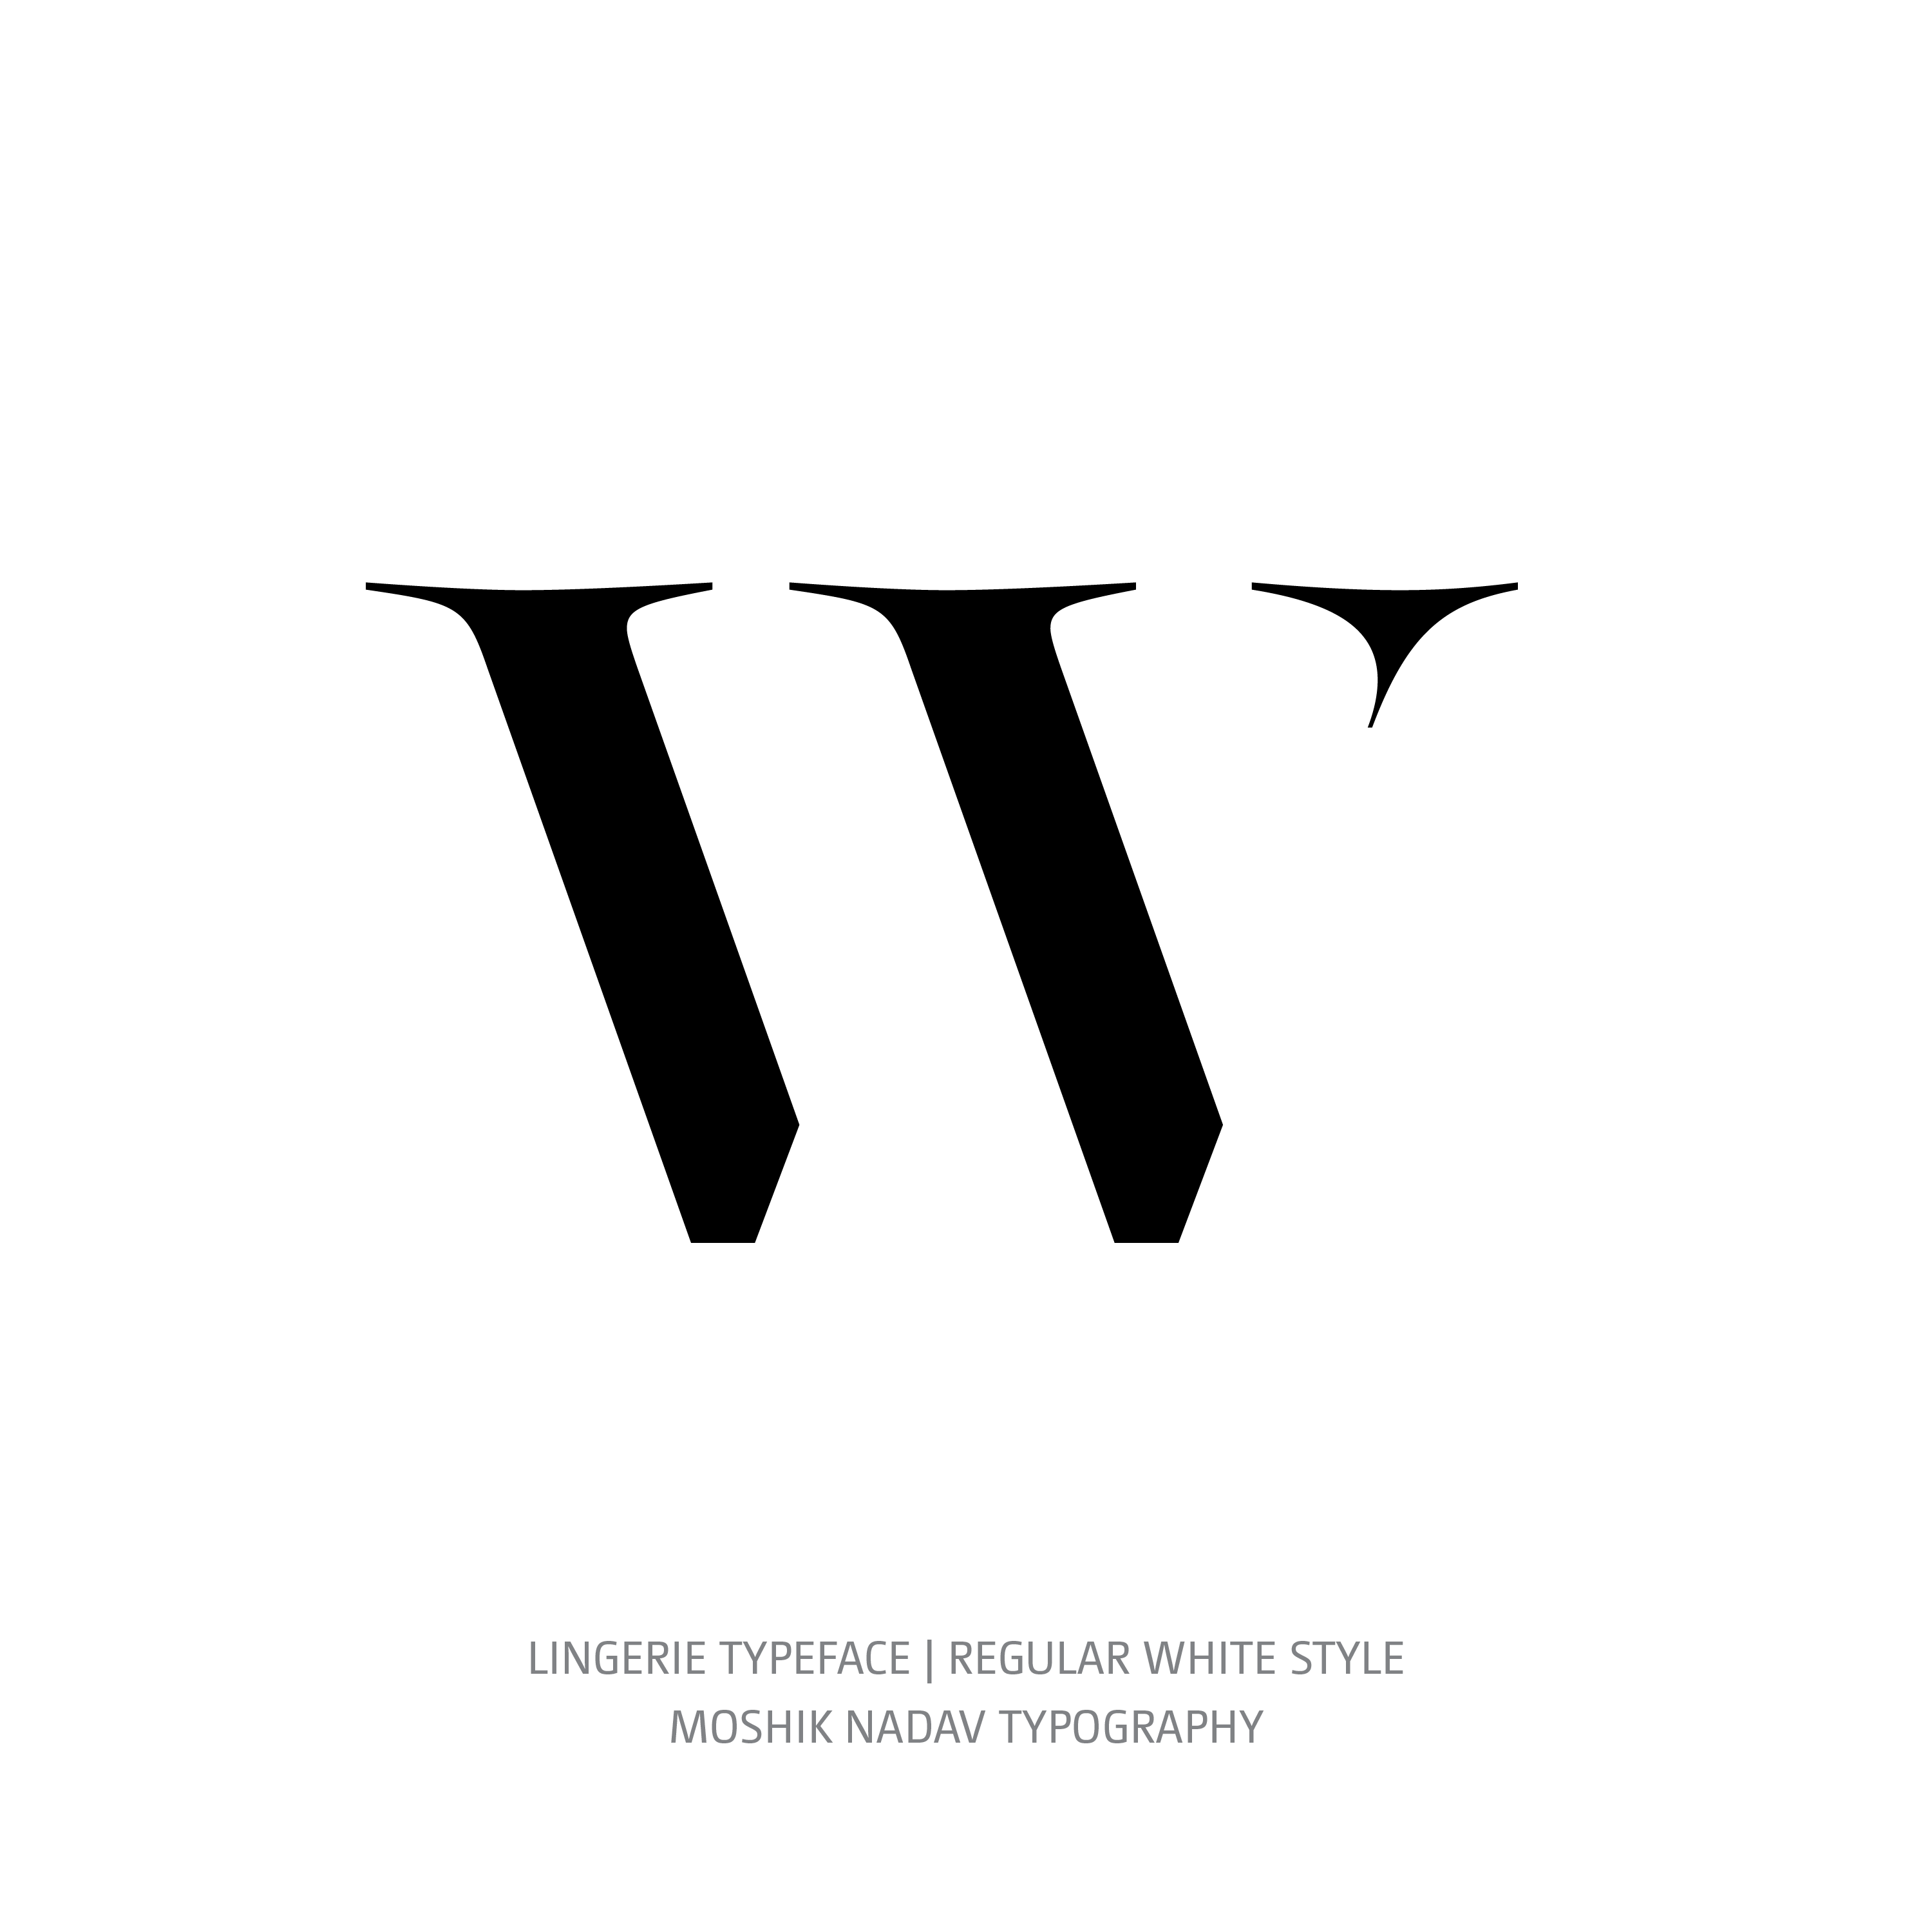 Lingerie Typeface Regular White w